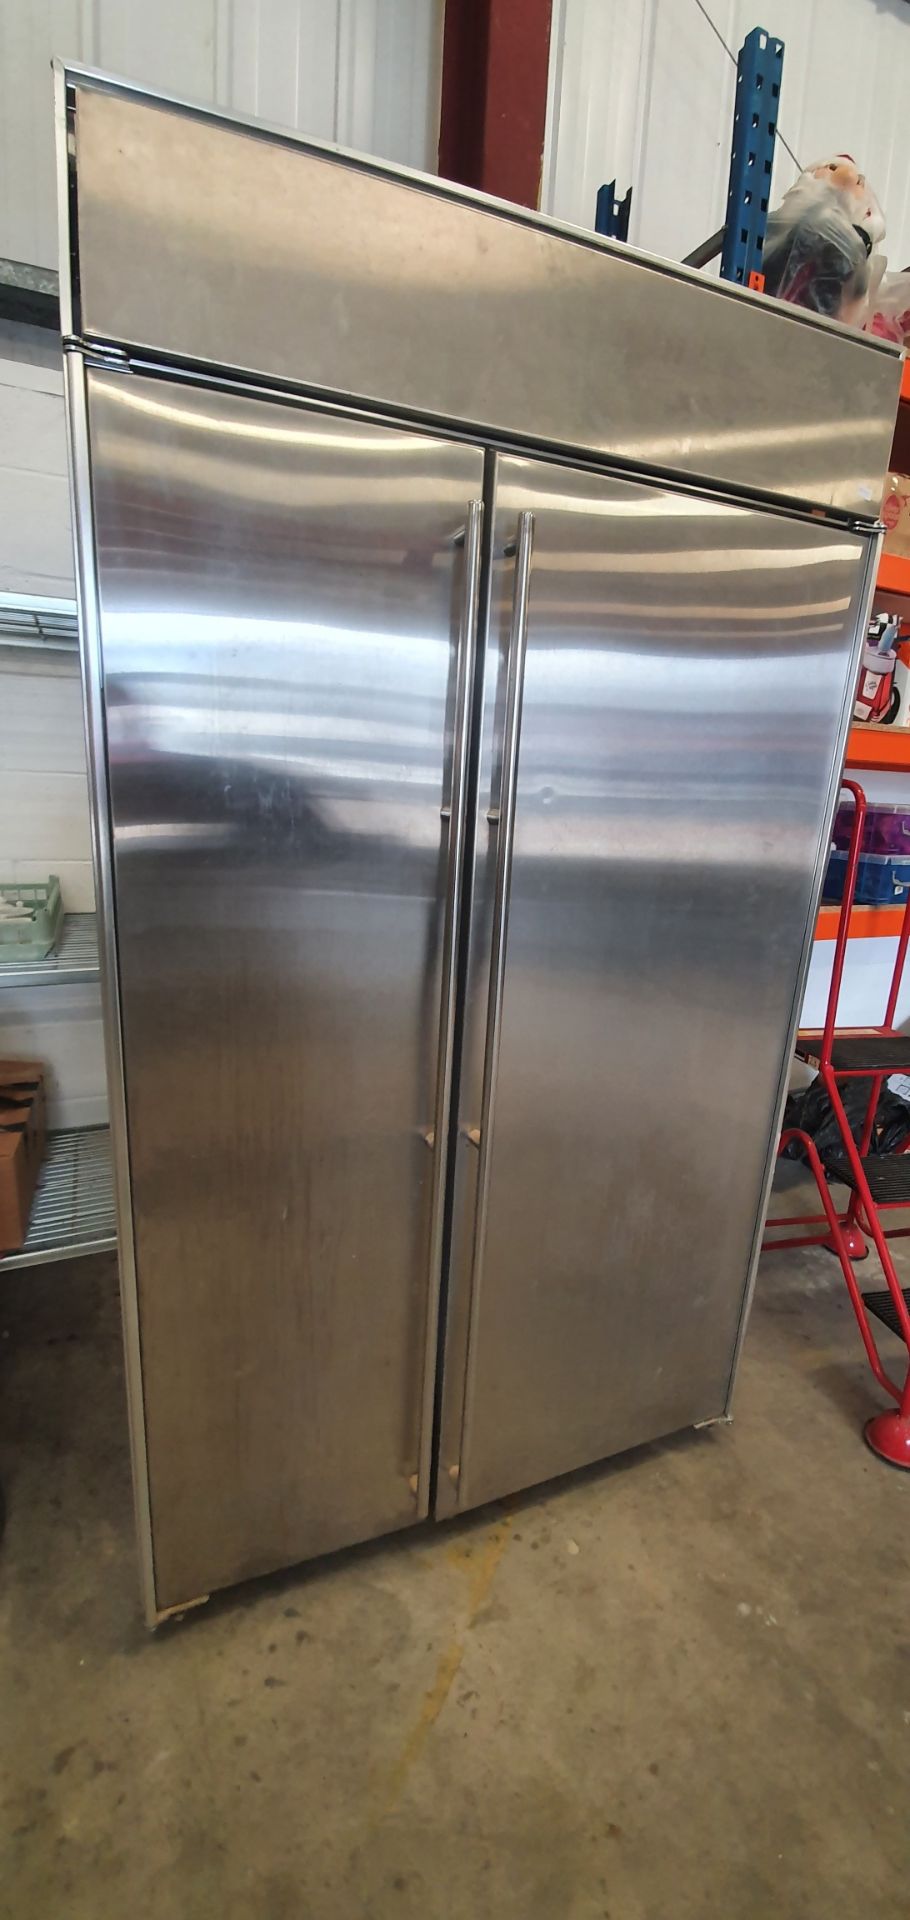 S/S Amana upright domestic fridge/freezer 1250w x 650d x 2100h - at Cornwall Street, Hull, HU8 8AF